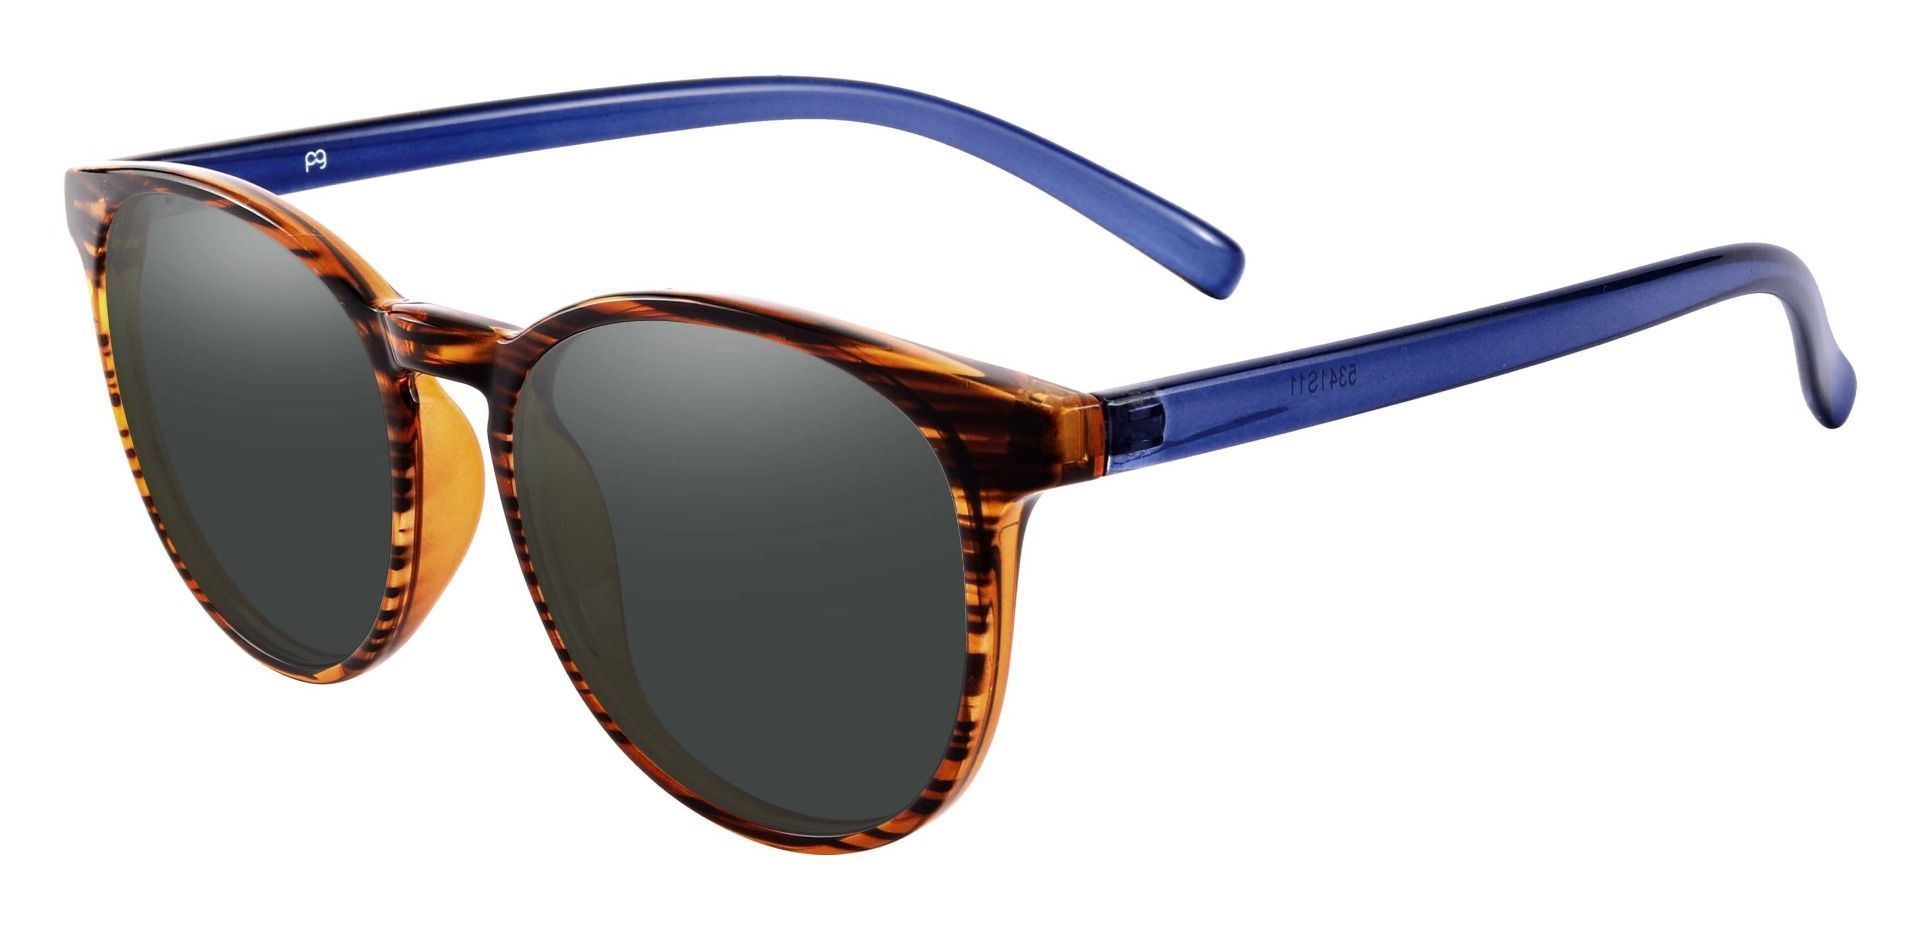 Corbett Oval Prescription Sunglasses - Striped Color Frame With Gray Lenses